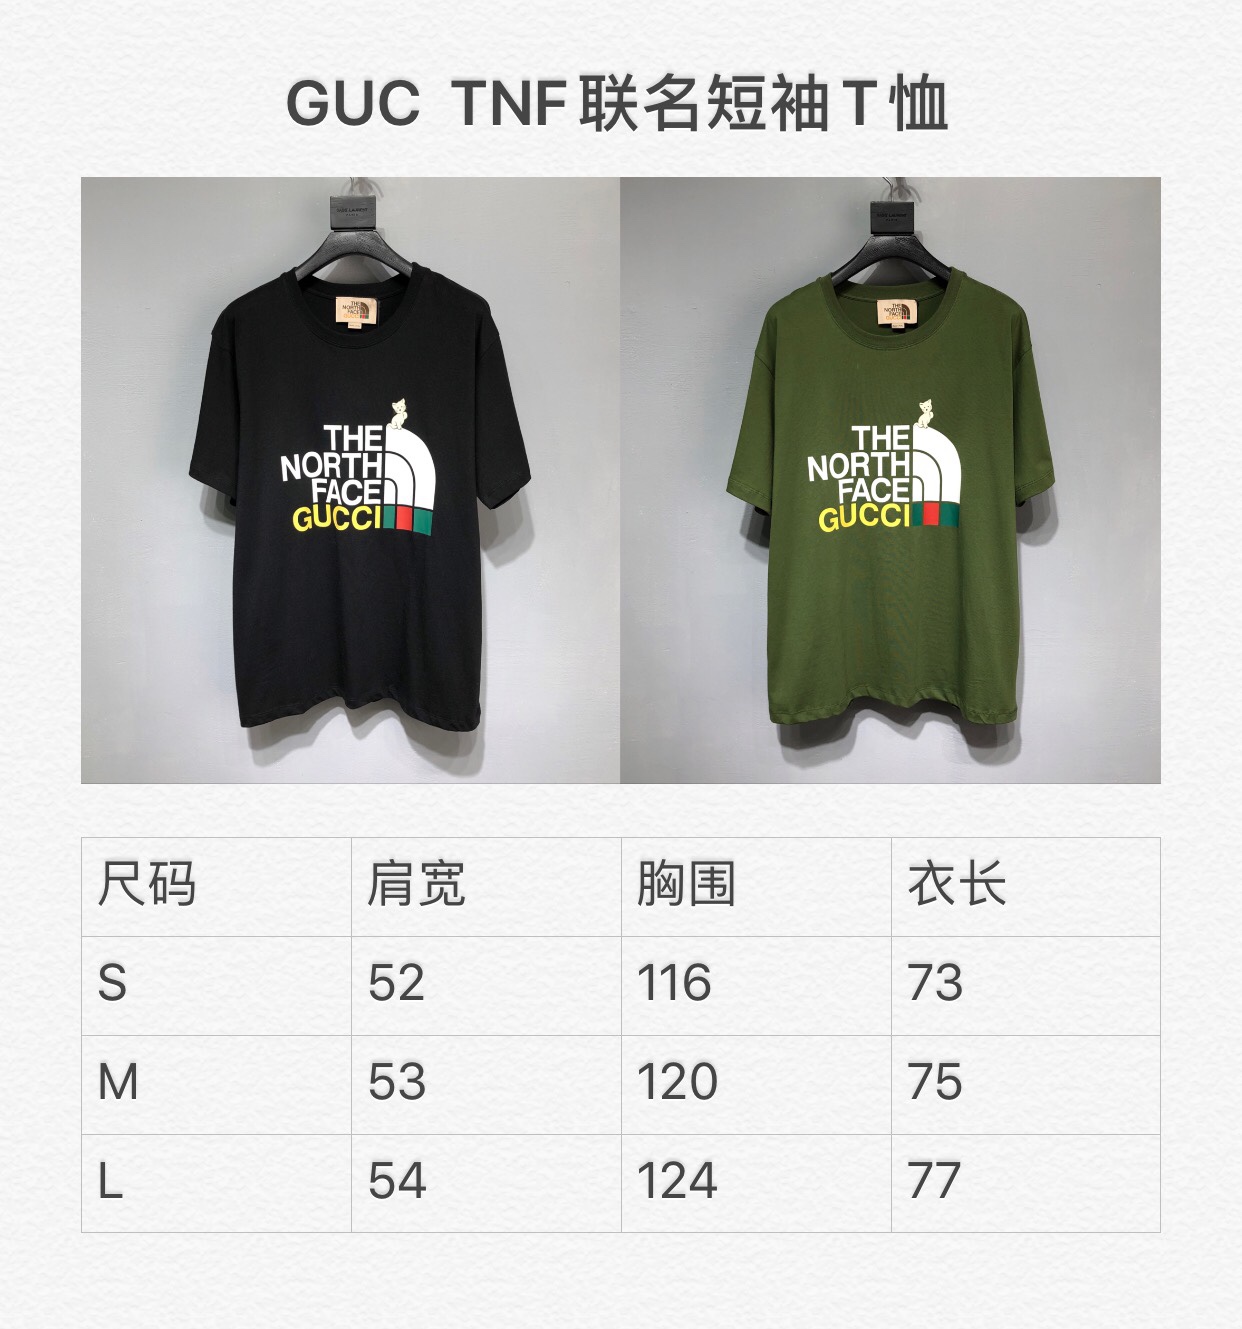 Gucci x TNF New Arrival T-shirt